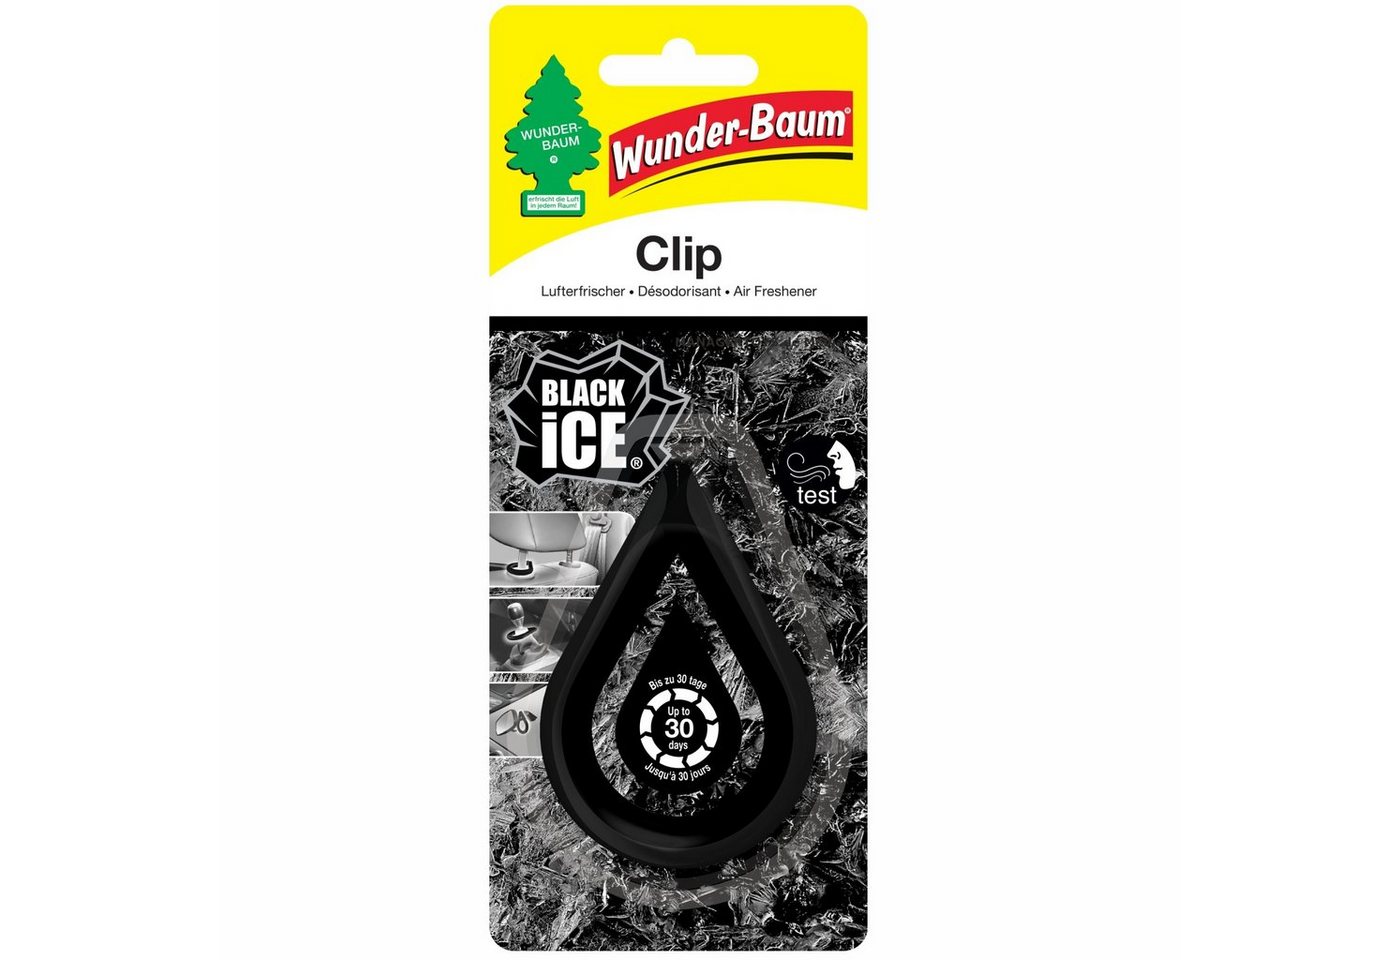 Kunstbaum Clip Wunderbaum Black Ice Duft Lufterfrischer, Wunder-Baum von Wunder-Baum